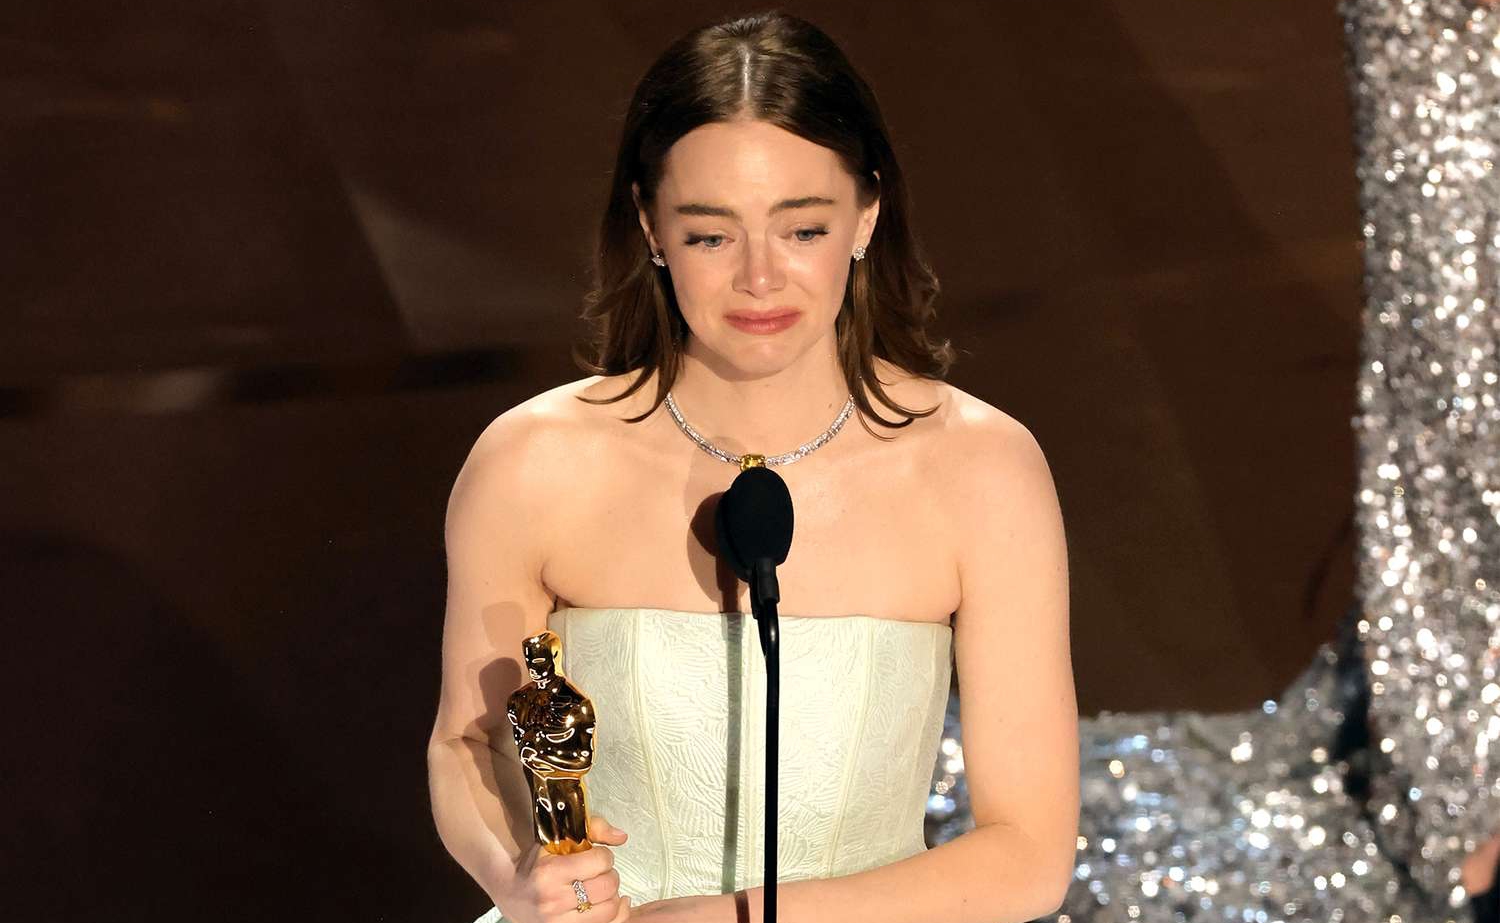 Untuk kedua kalinya, Emma Stone memenangkan nominasi Best Actress di Oscars. Kali ini berkat performanya dalam film Poor Things